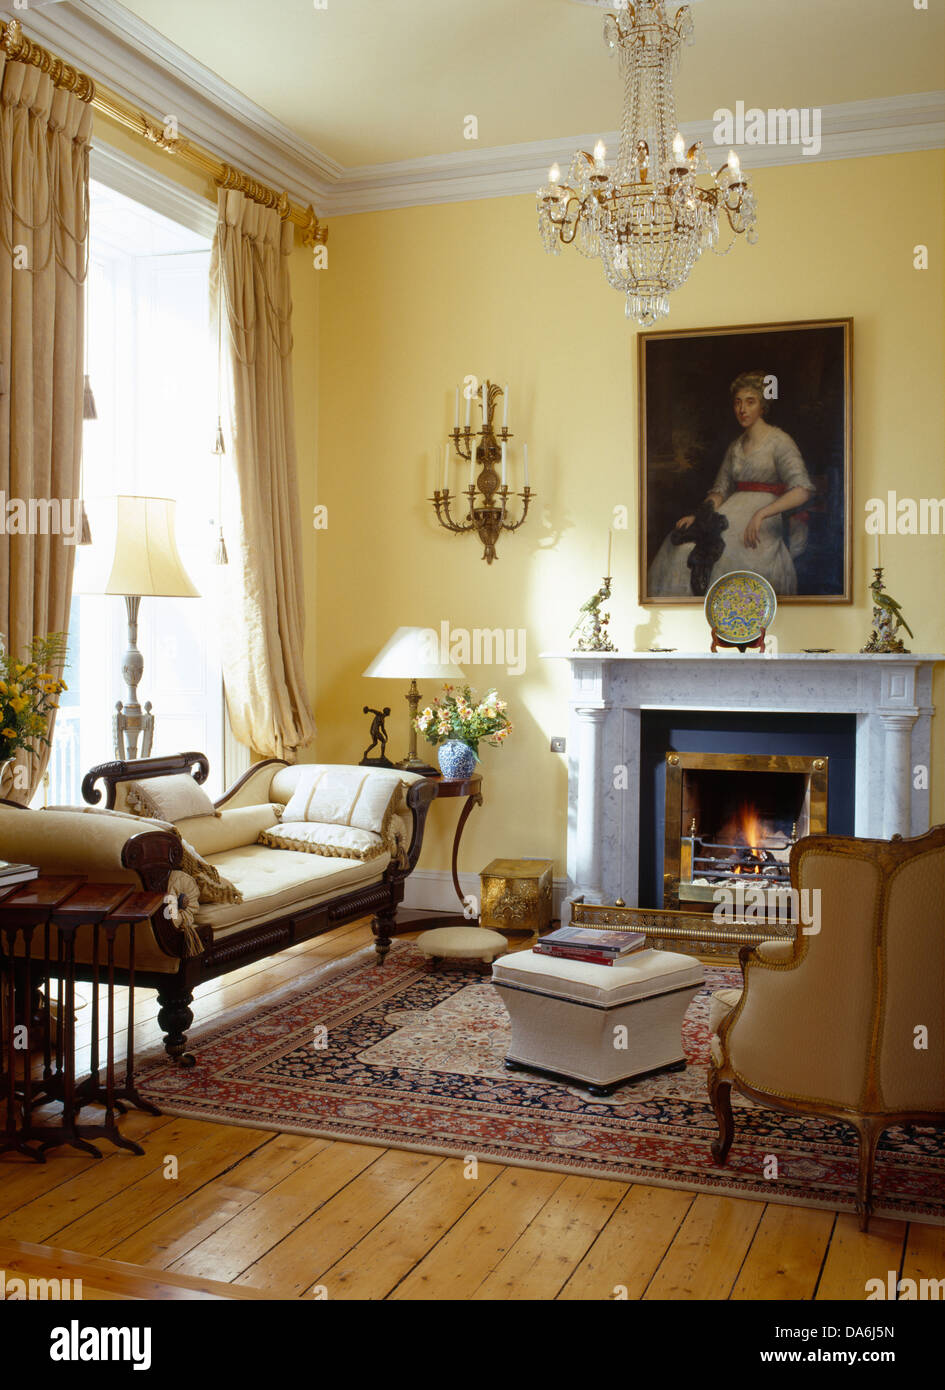 Mobilier chaise longue et parquet dans salon avec grande peinture au-dessus de cheminée en marbre Banque D'Images